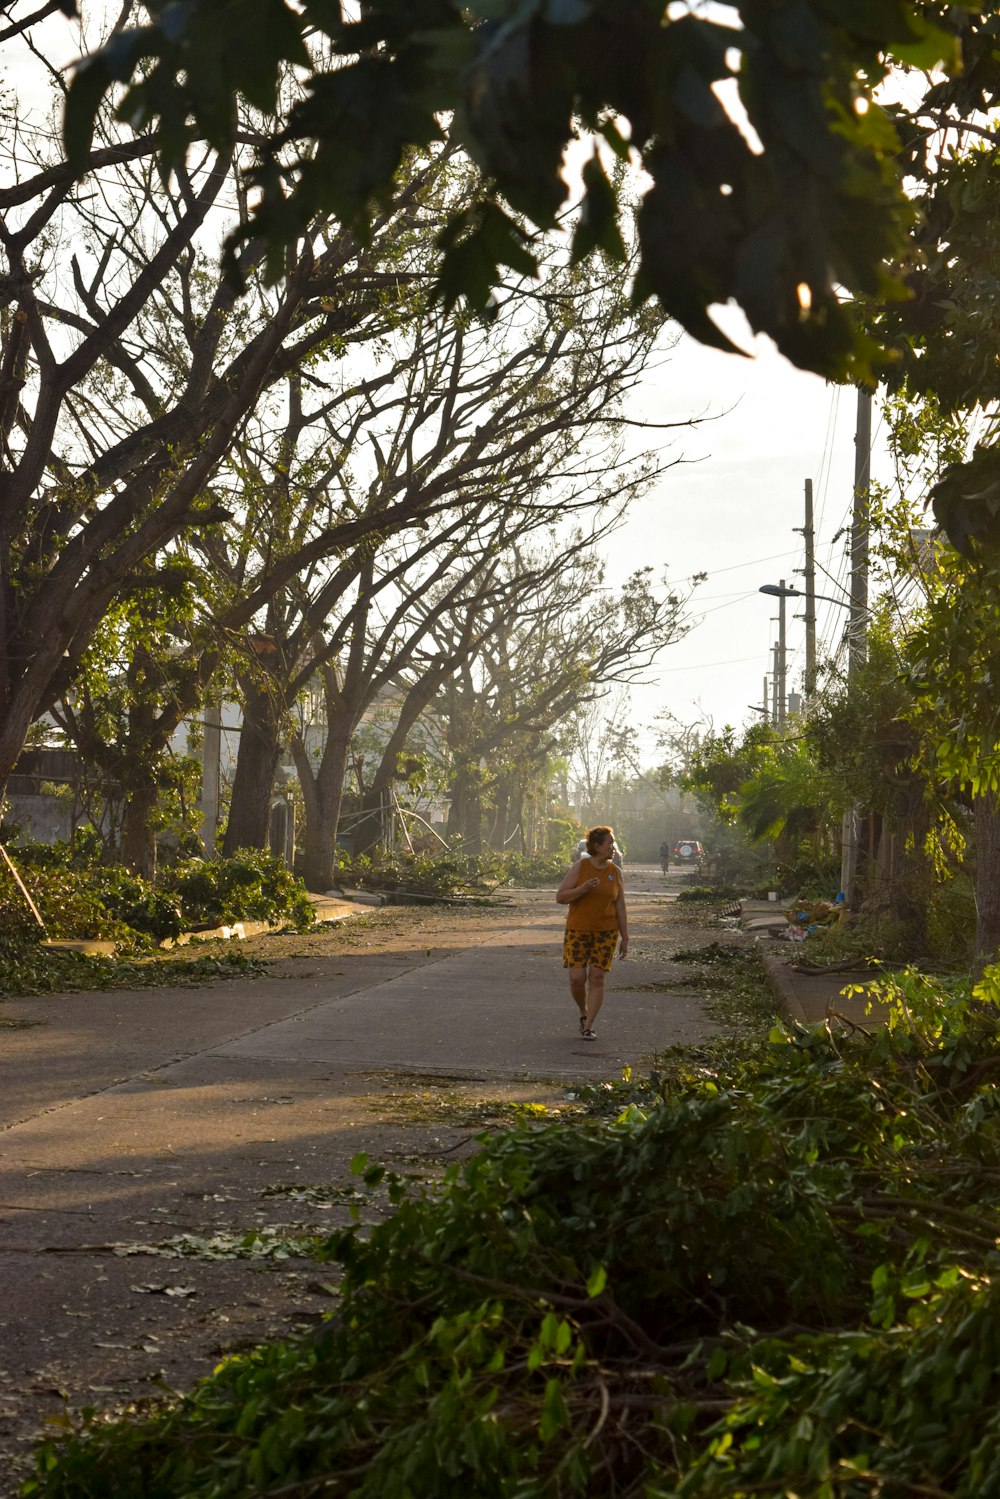 Une femme marchant dans une rue à côté d’arbres